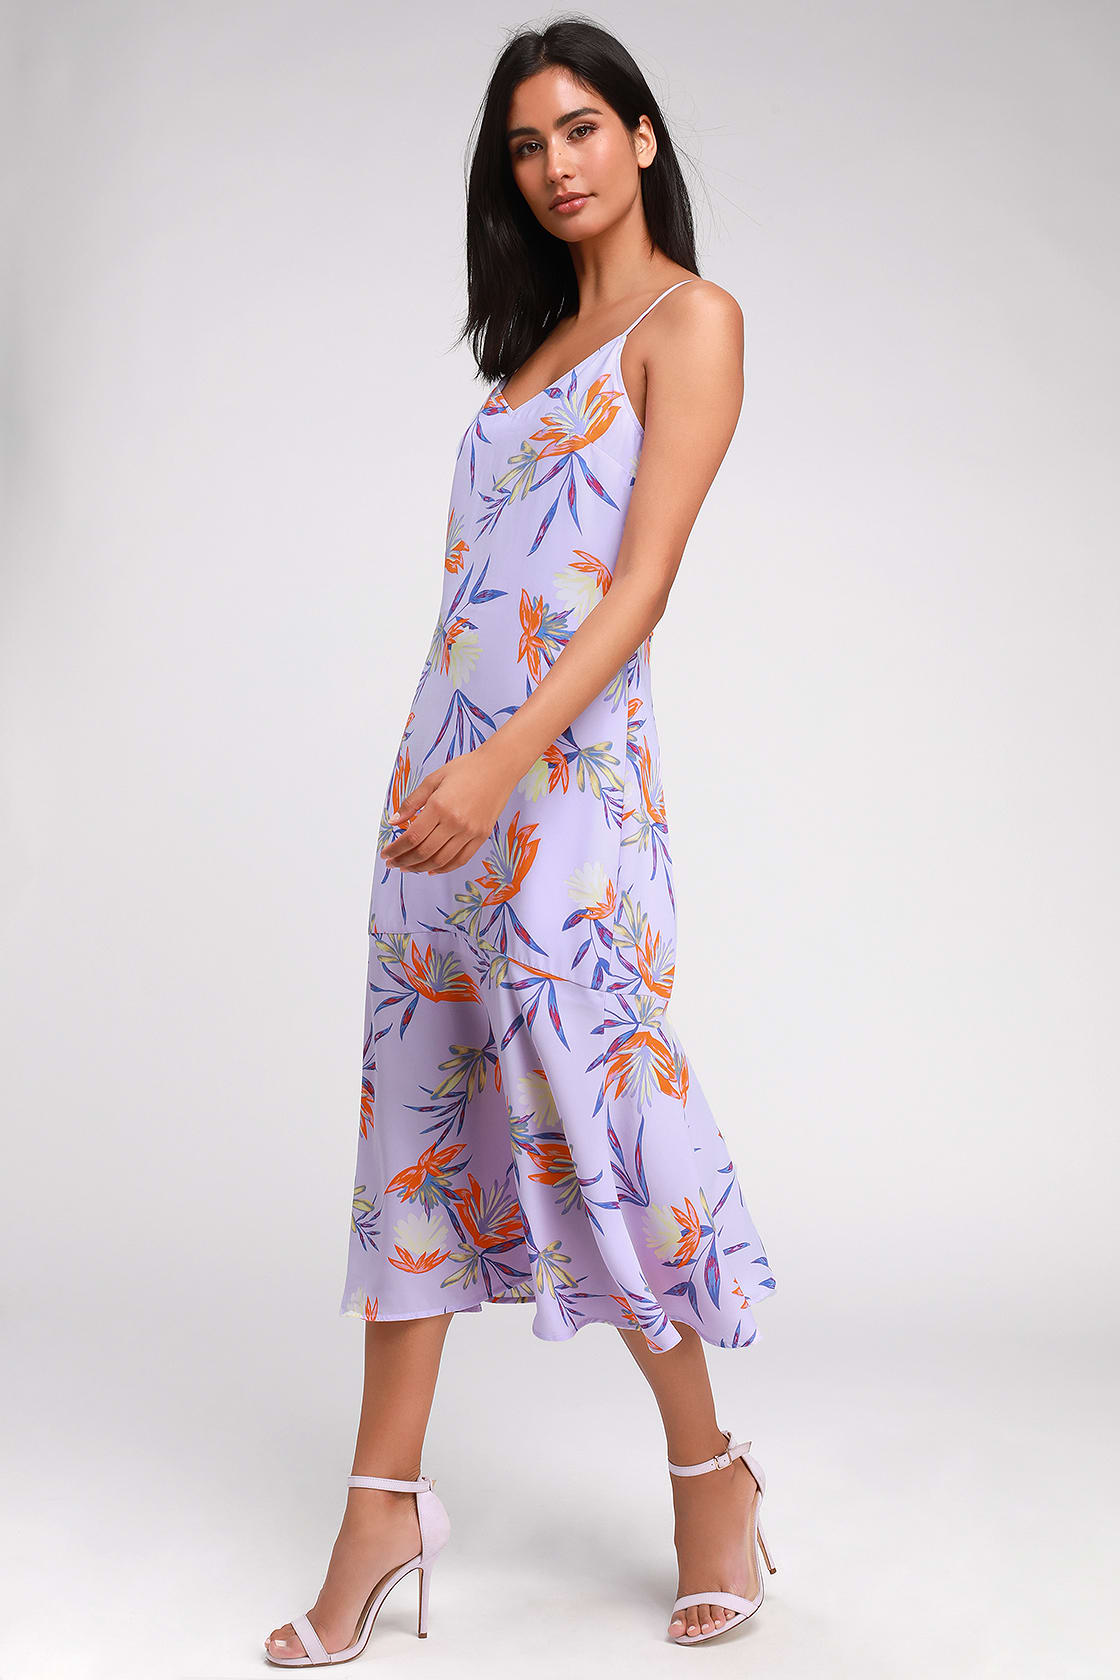 Cute Midi Dress - Floral Print Midi Dress - Trumpet Hem Dress - Lulus